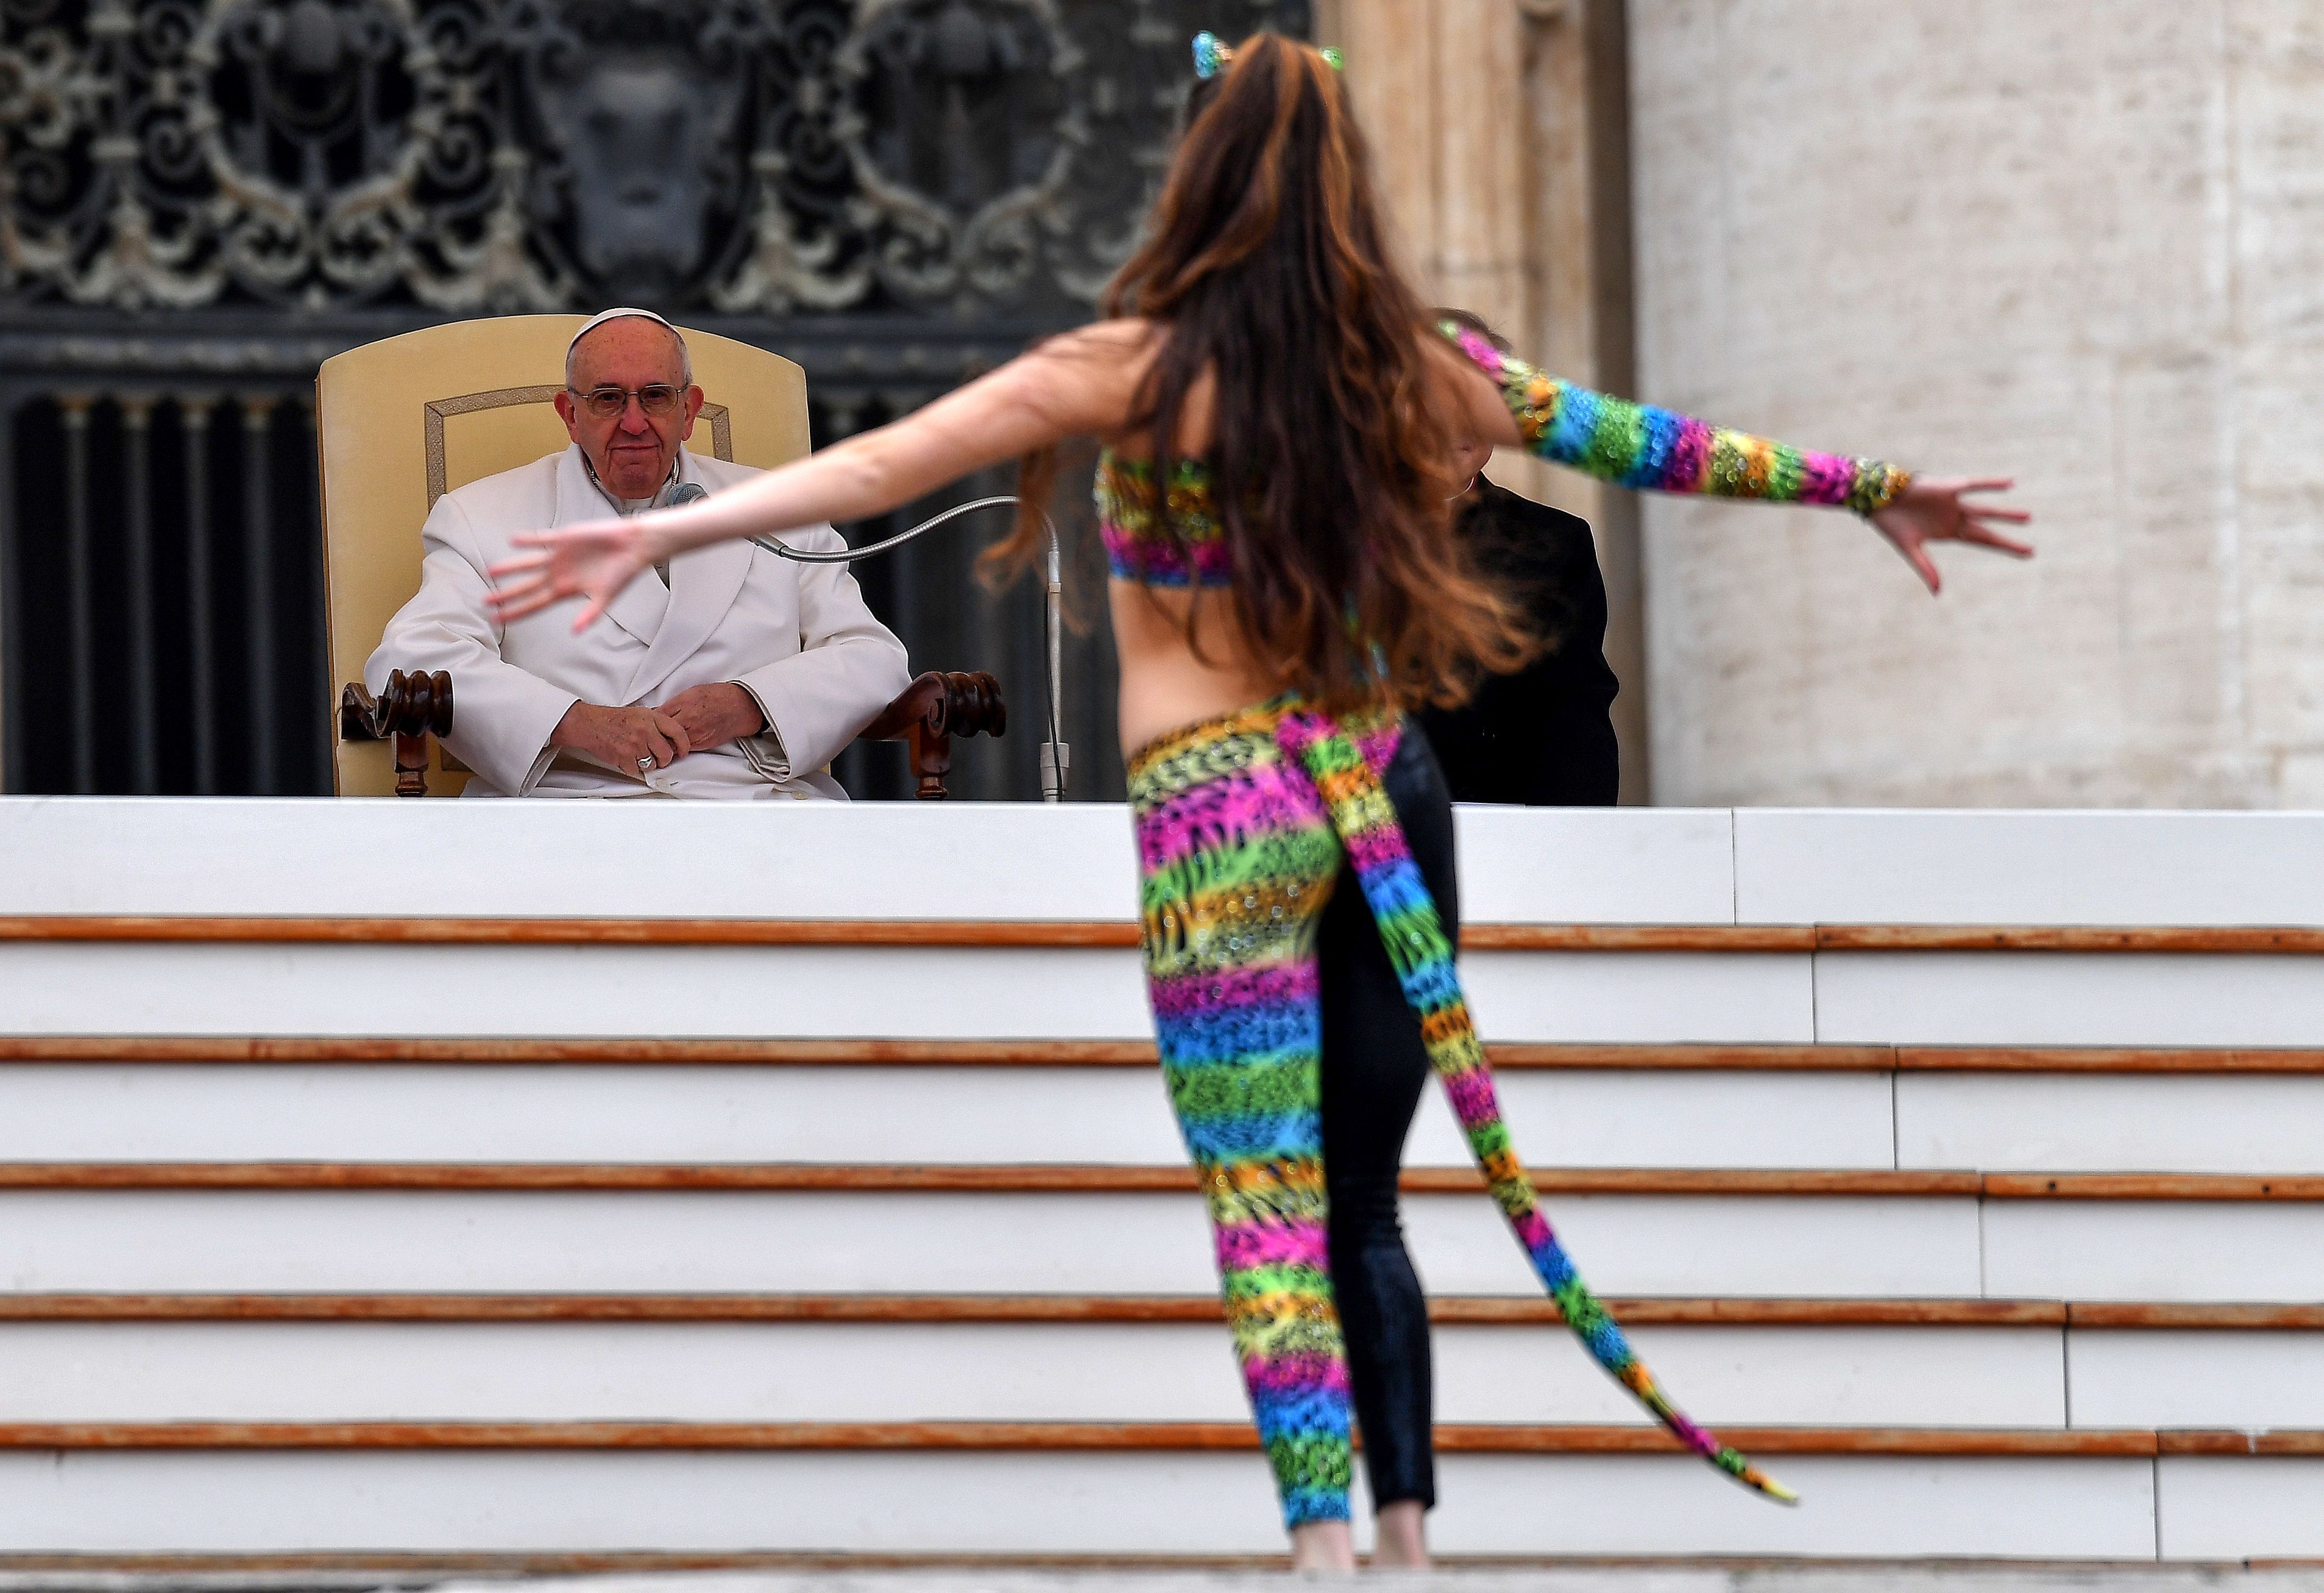 البابا ينظر إلى الفتاة خلال أدائها العروض الفنية - أ ف ب